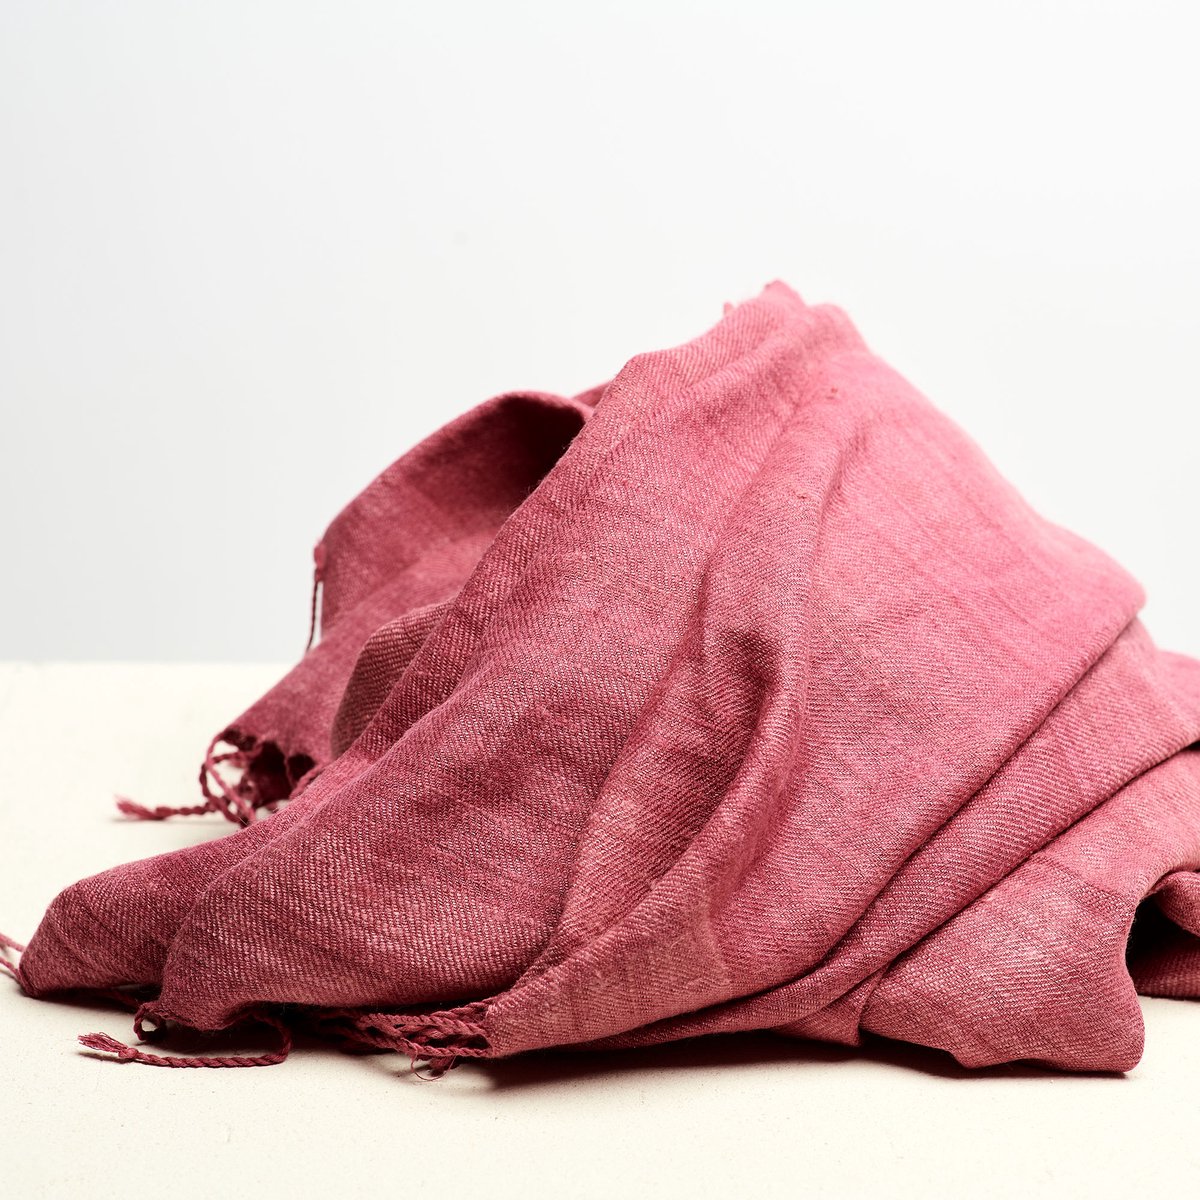 Dzukou Timeless Silk - Sjaal - Dames - Eri Zijden - Handgemaakt - Roze - 220x60 cm